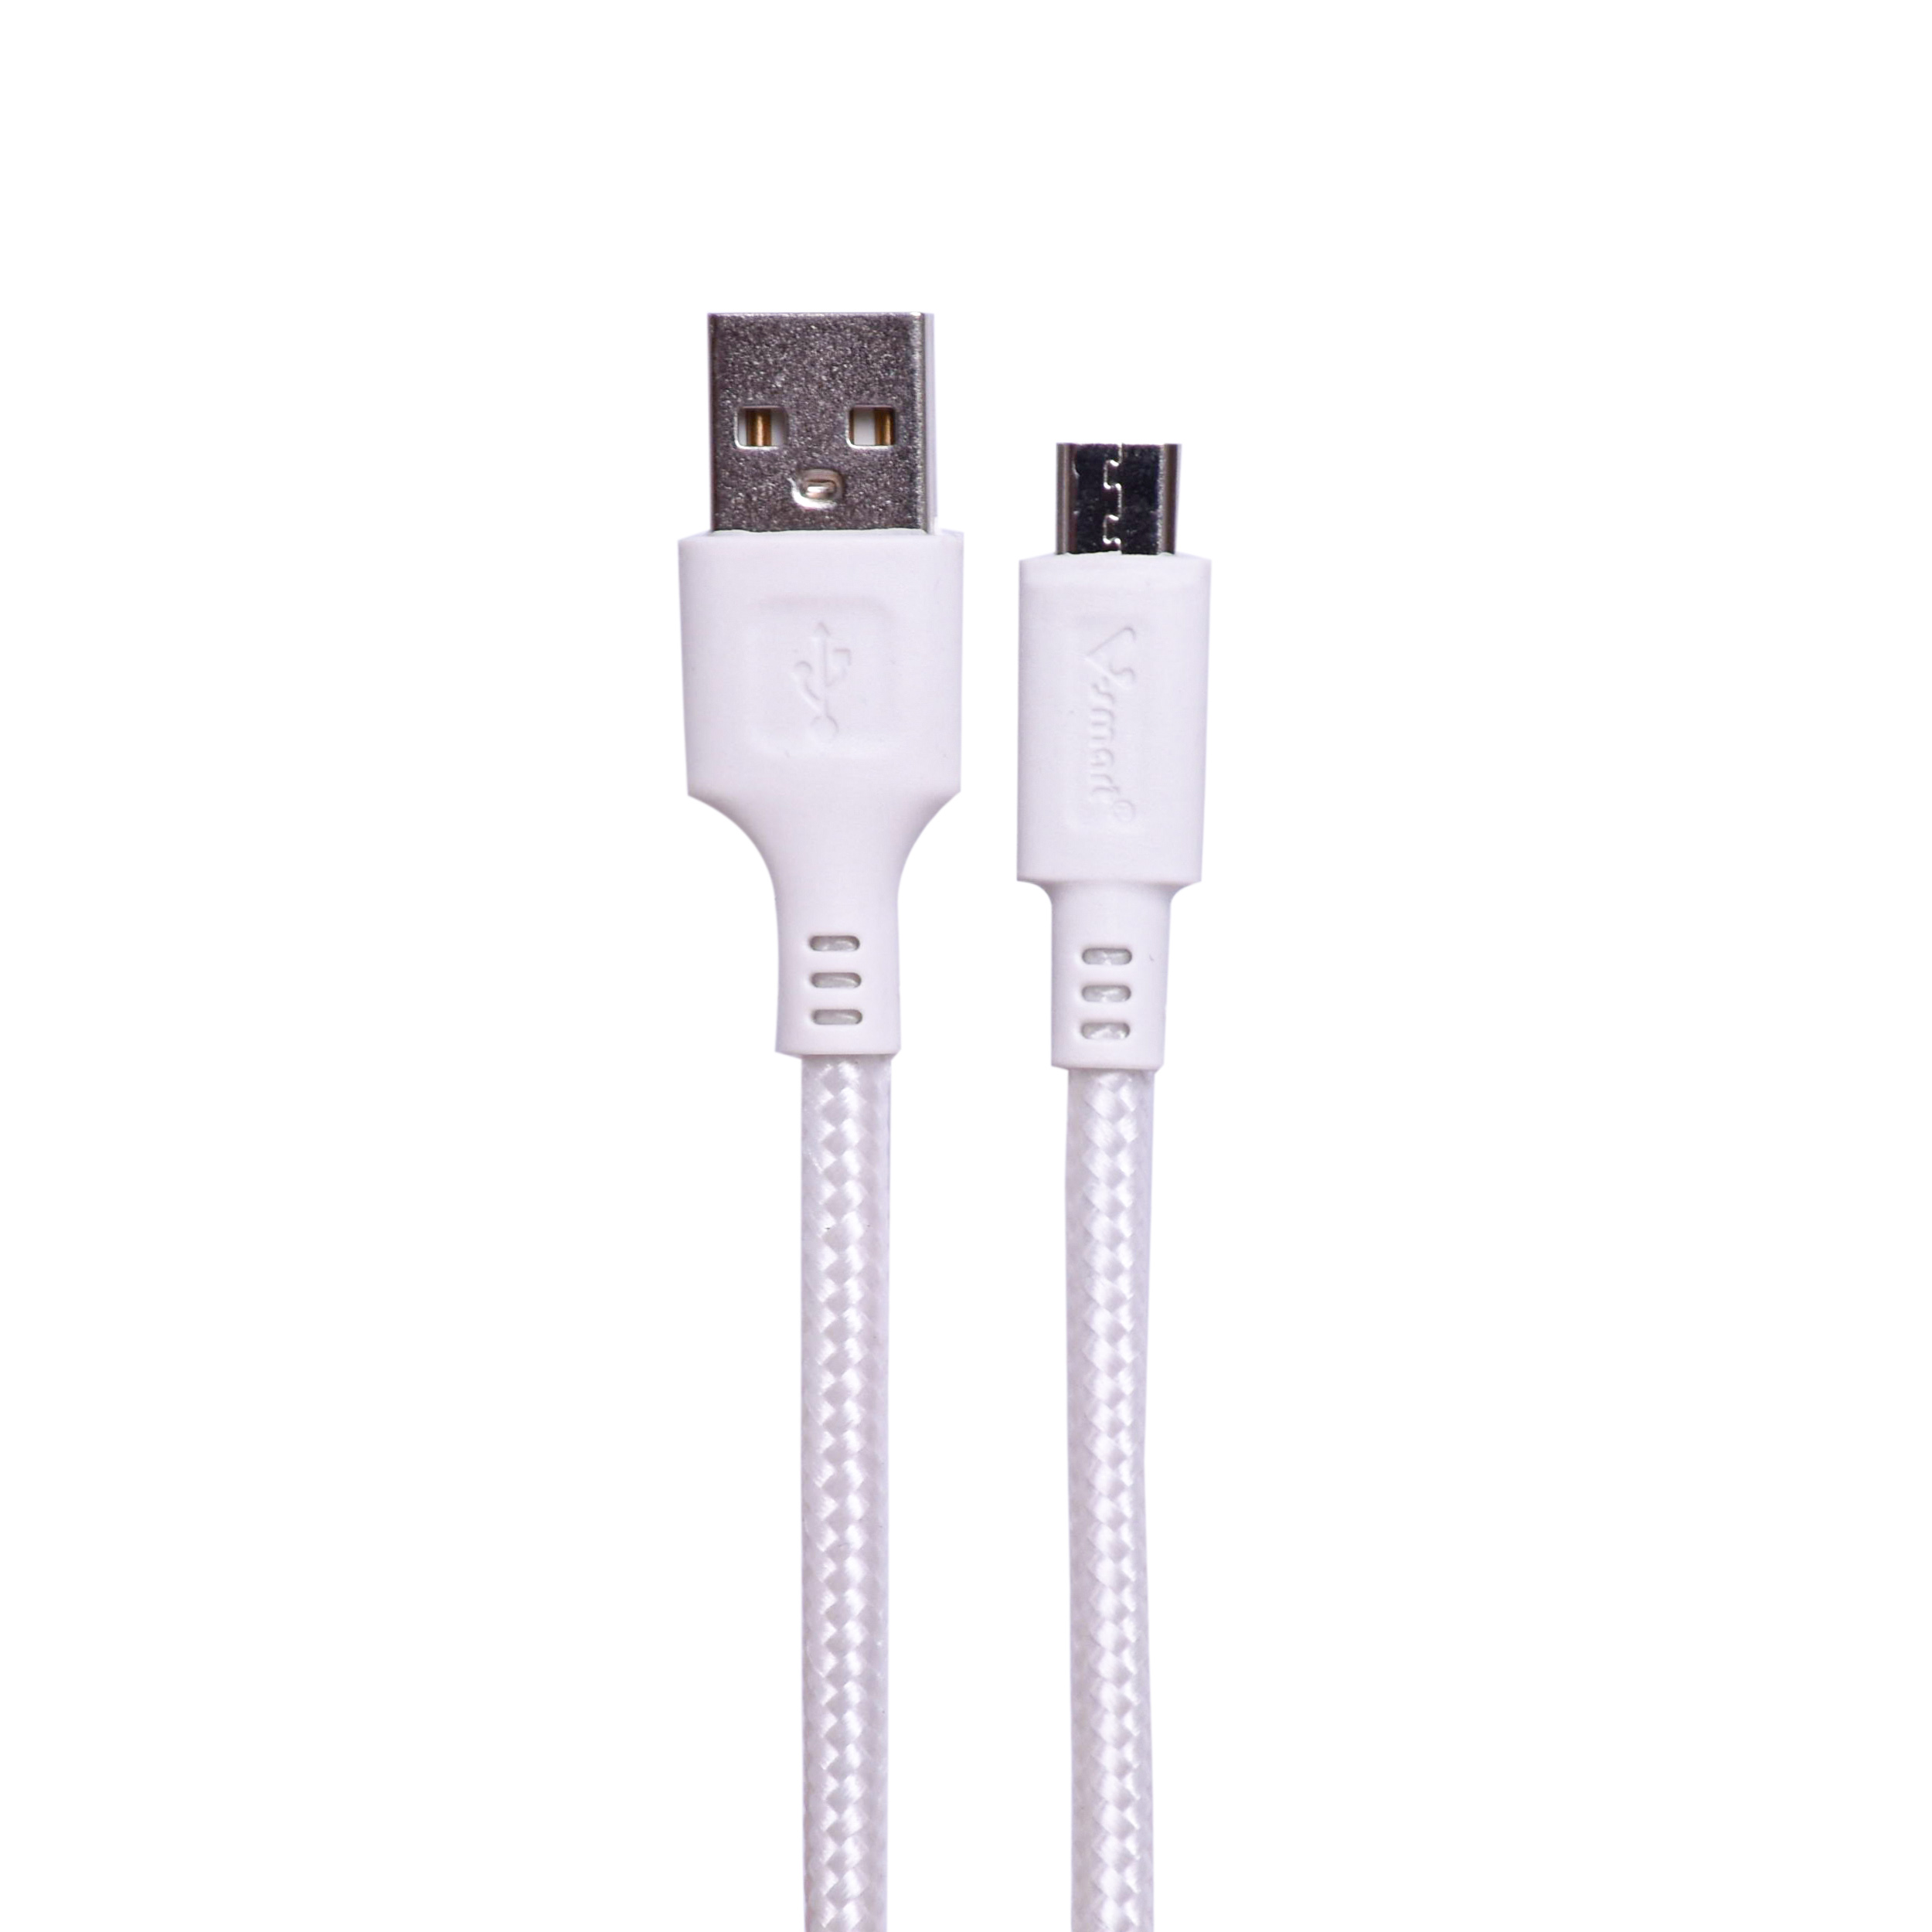 کابل تبدیل USB به microUSB اسمارت مدل RD 702 طول 1 متر